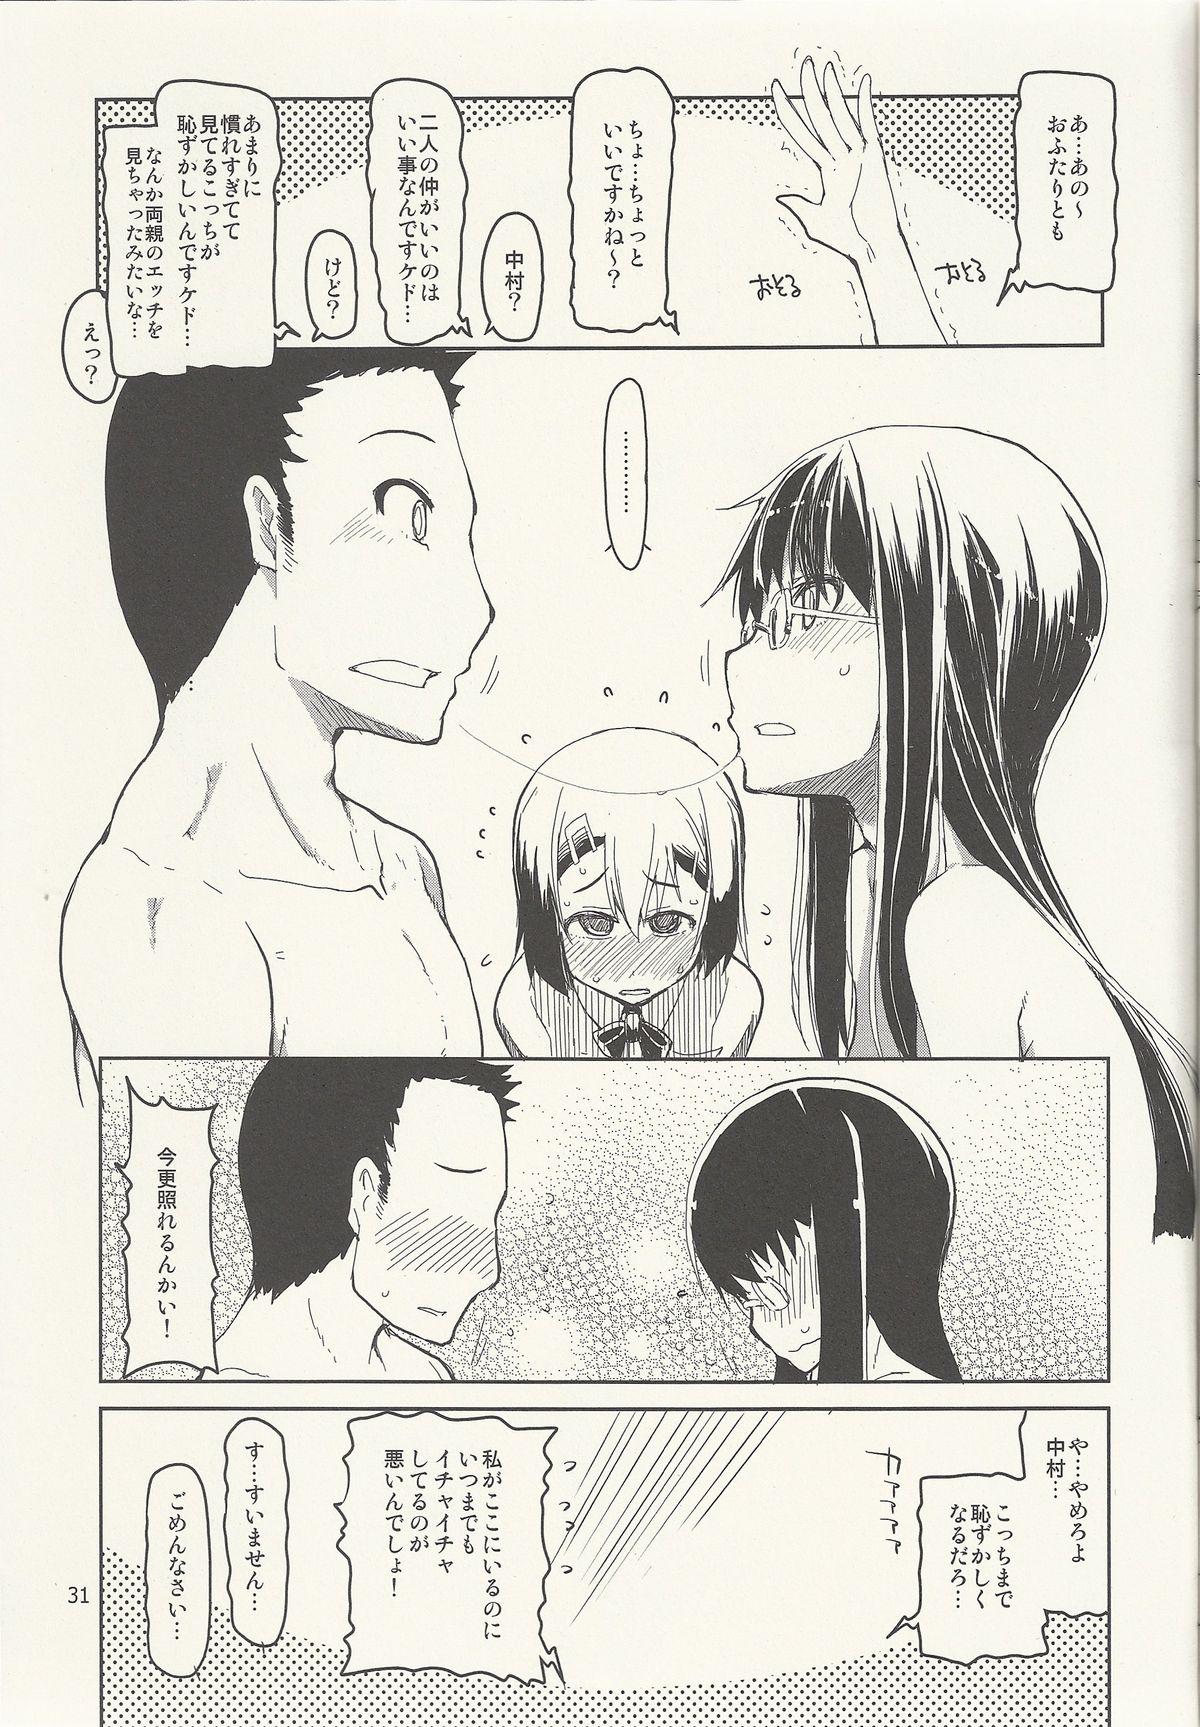 Natsuzuka-san no Himitsu. Vol. 6 Kanketsu Hen 31